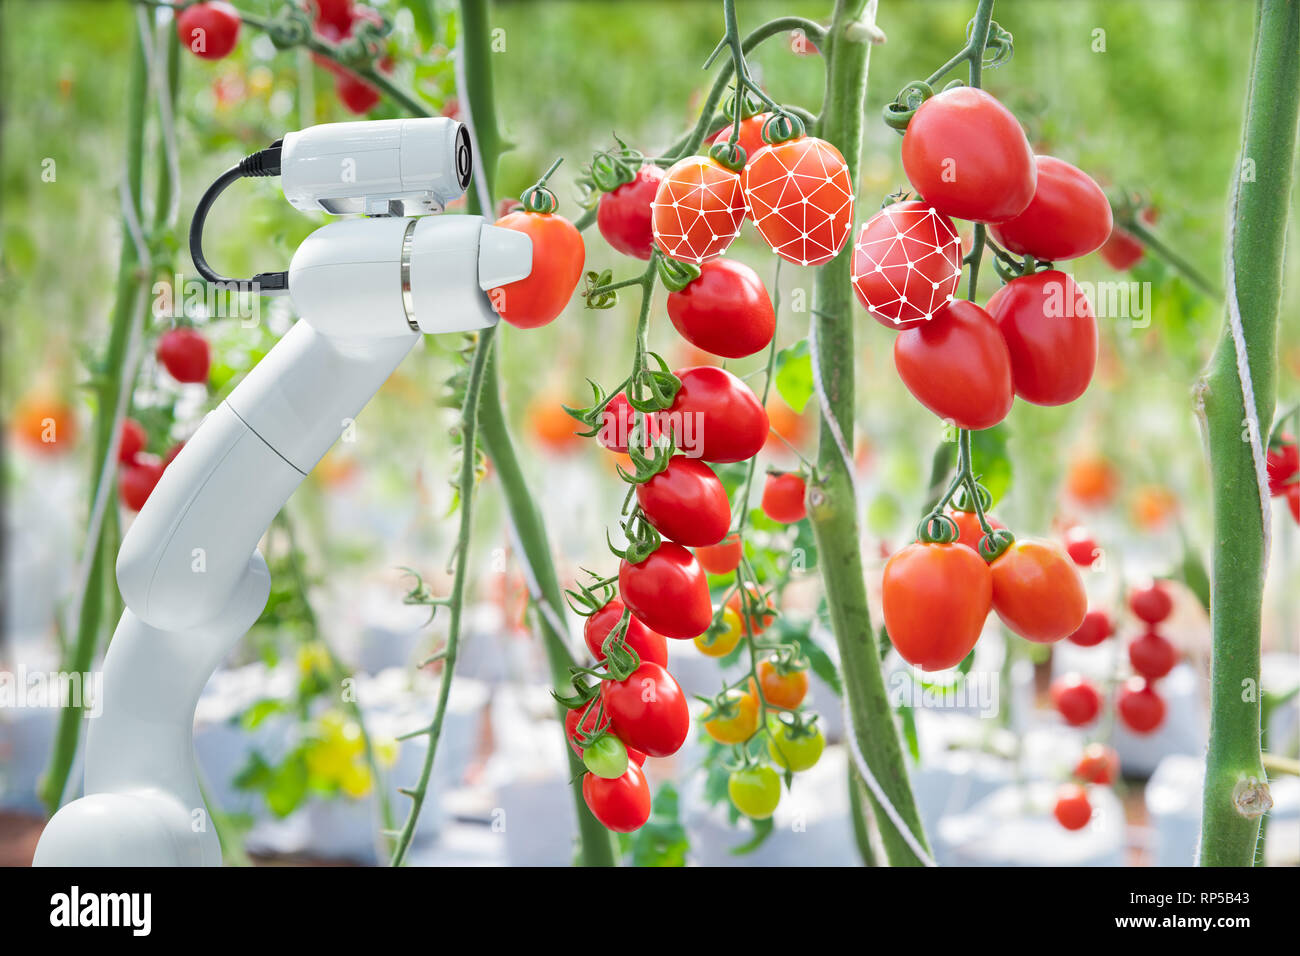 Tecnología de procesamiento de imágenes se aplican con el robot utilizado para cosechar tomates en agricultura industrial Foto de stock